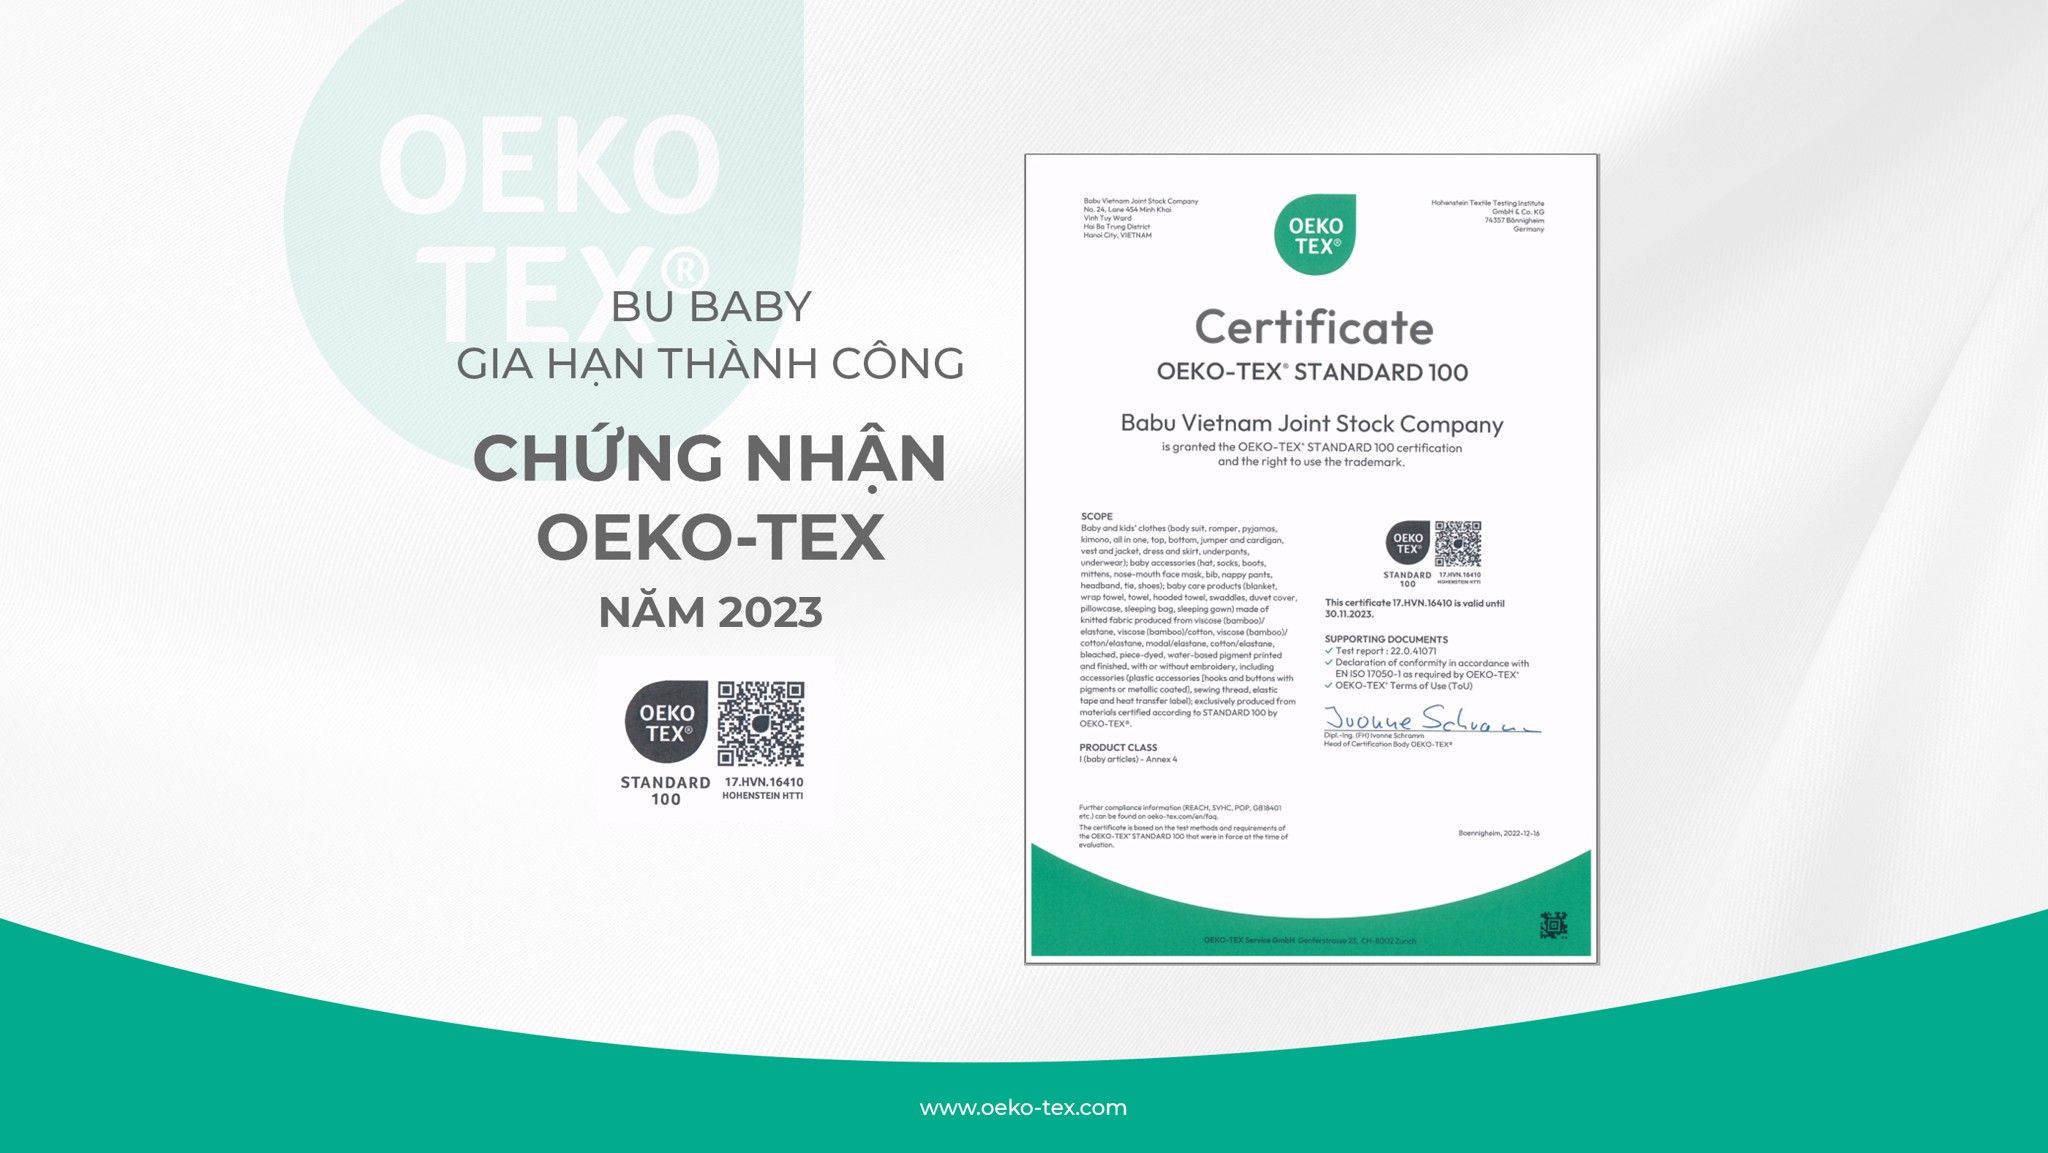 BU Baby successfully renewes OEKO-TEX Certificate in 2023